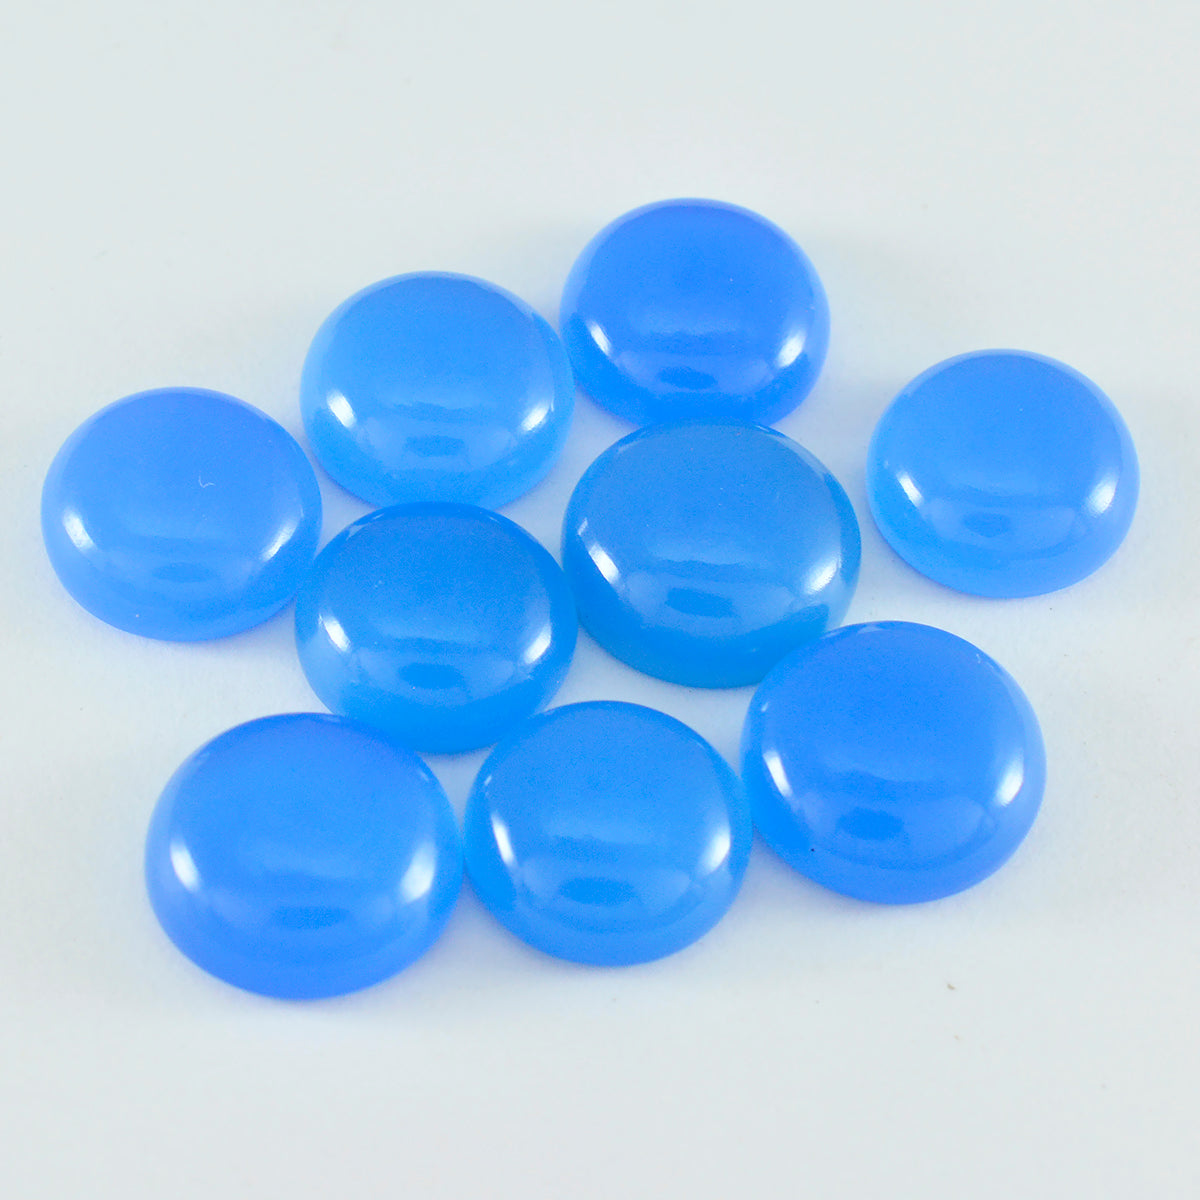 riyogems 1шт синий халцедон кабошон 6x6 мм круглая форма хорошее качество драгоценные камни